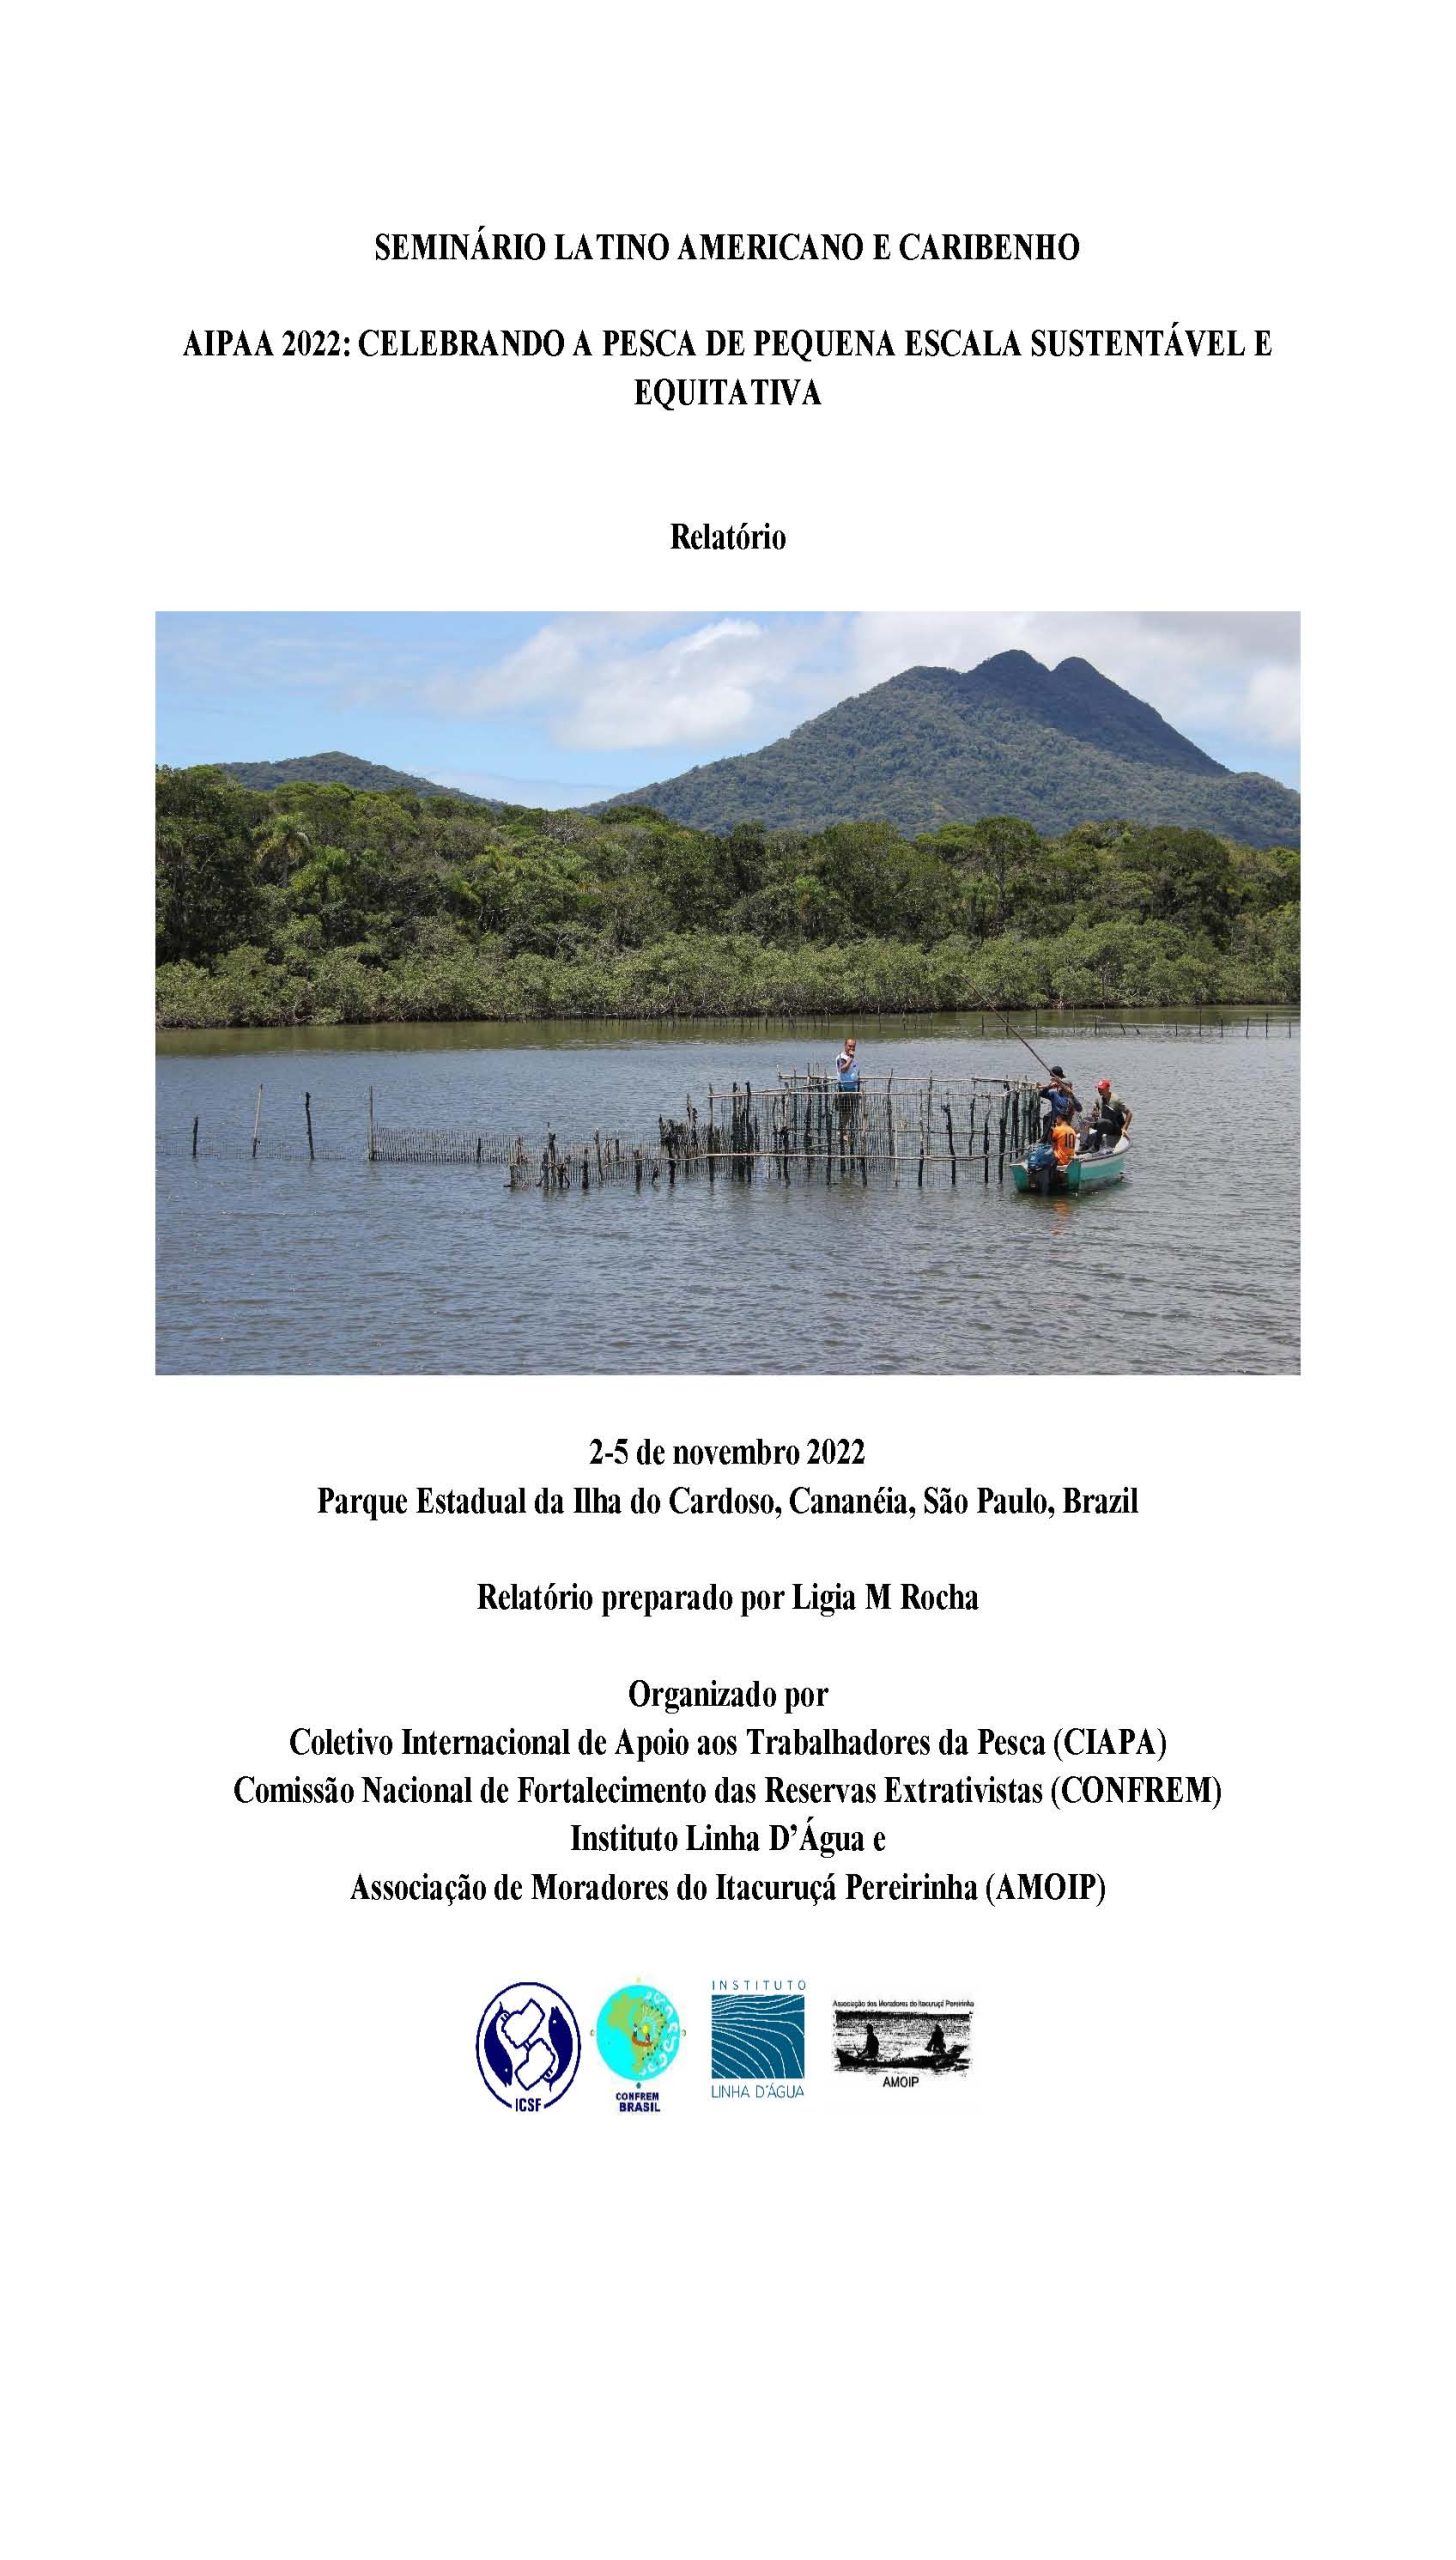 Relatório do Seminário Latino Americano e Caribenho AIPAA 2022: Celebrando a Pesca de Pequena Escala Sustentável e Equitativa, 2-5 de novembro 2022, Brazil Relatório preparado por Ligia M Rocha